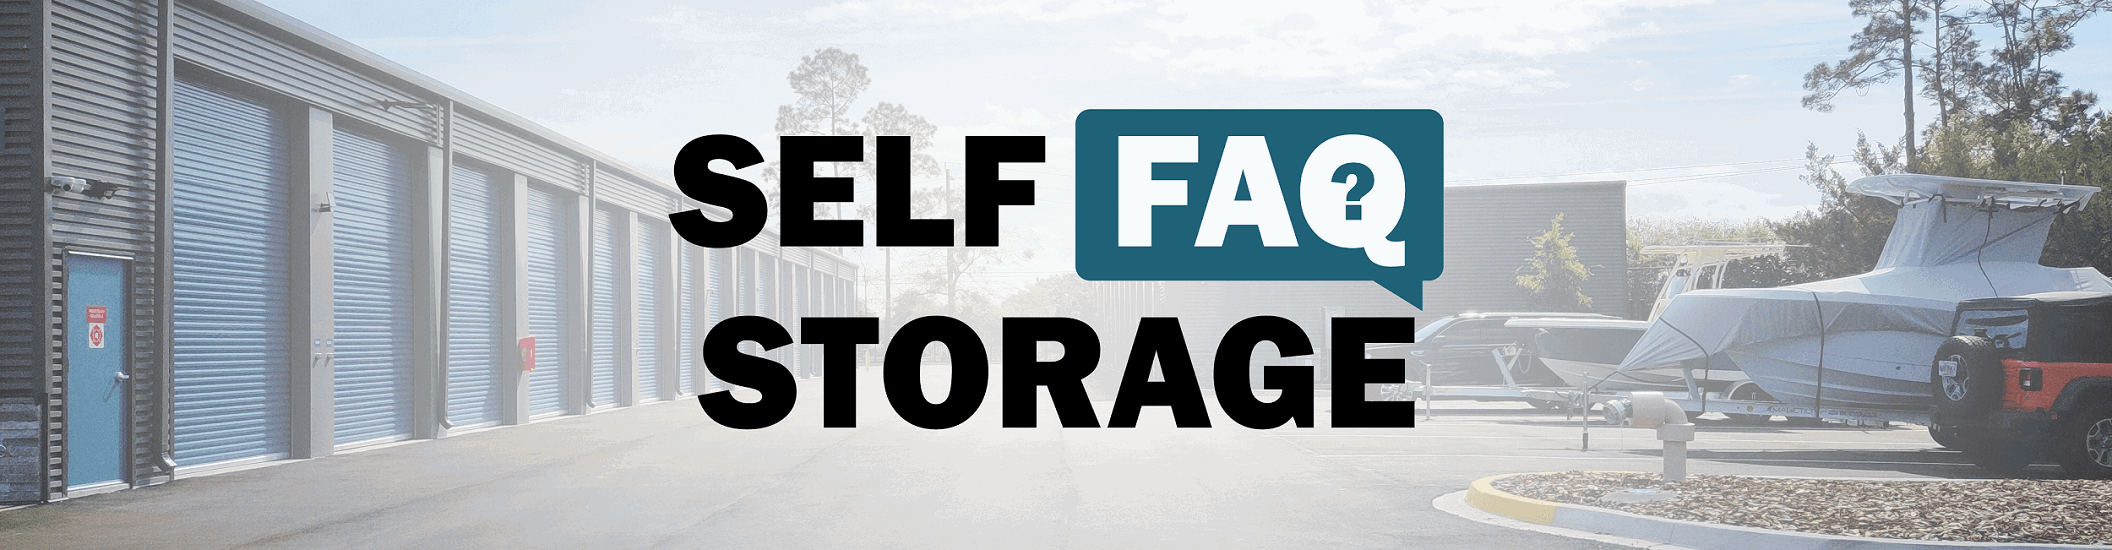 self storage faq